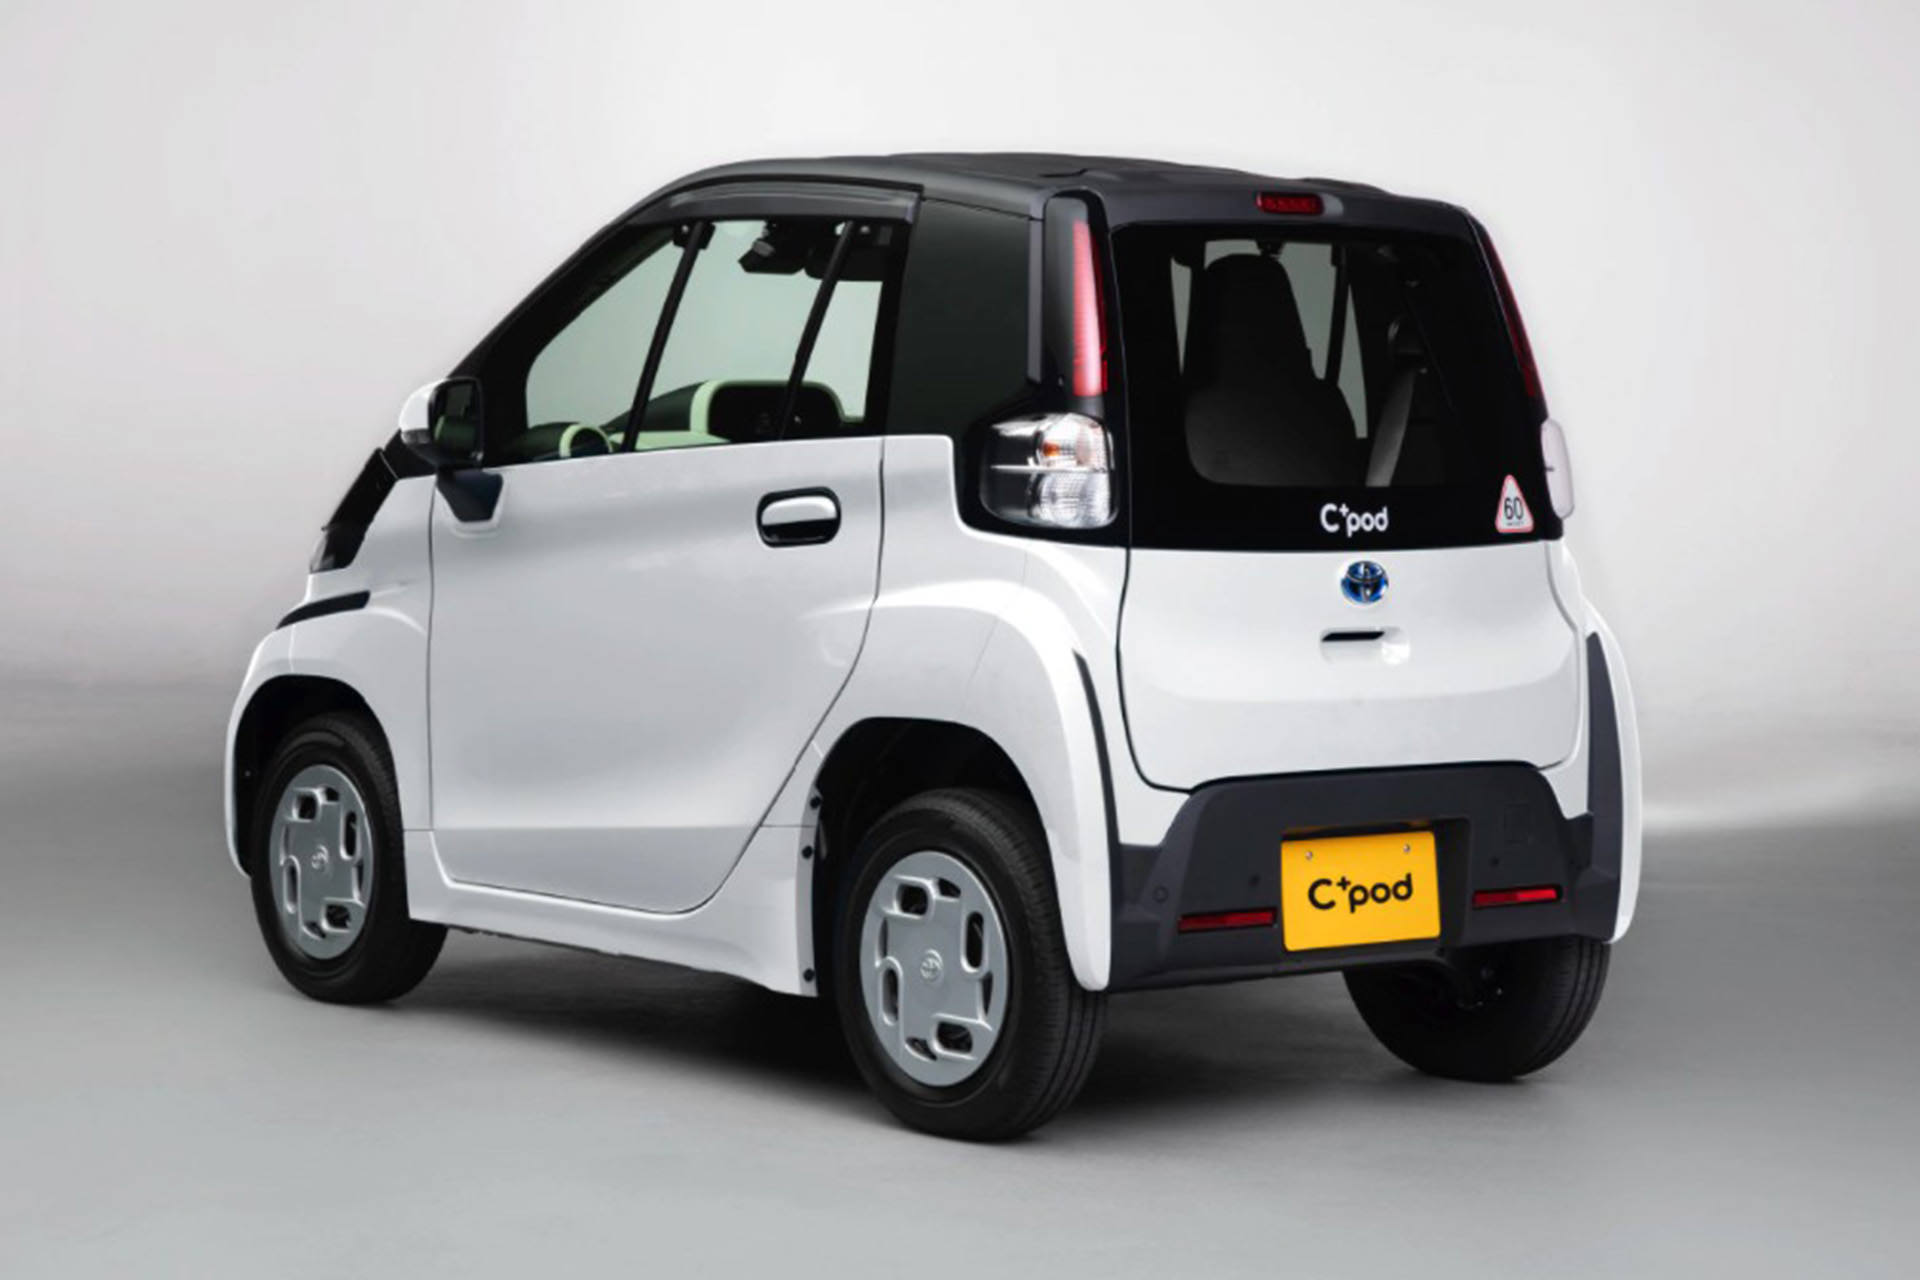 نمای عقب خودروی الکتریکی تویوتا سی پلاس پاد / Toyota C+pod Electric Car